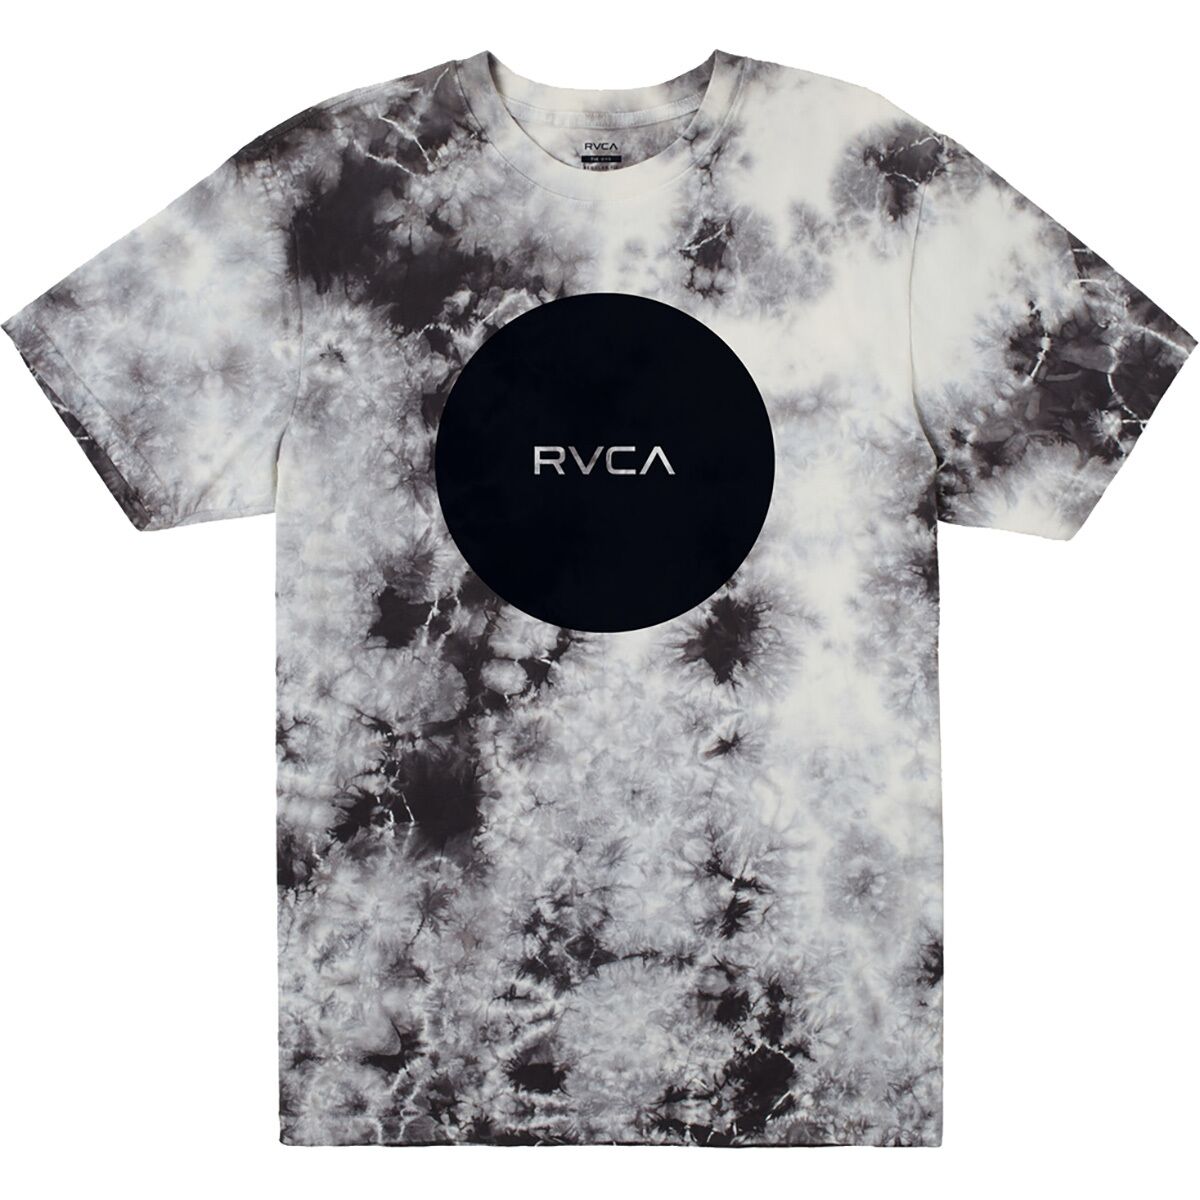 RVCA Motors Shock T-Shirt - Men's